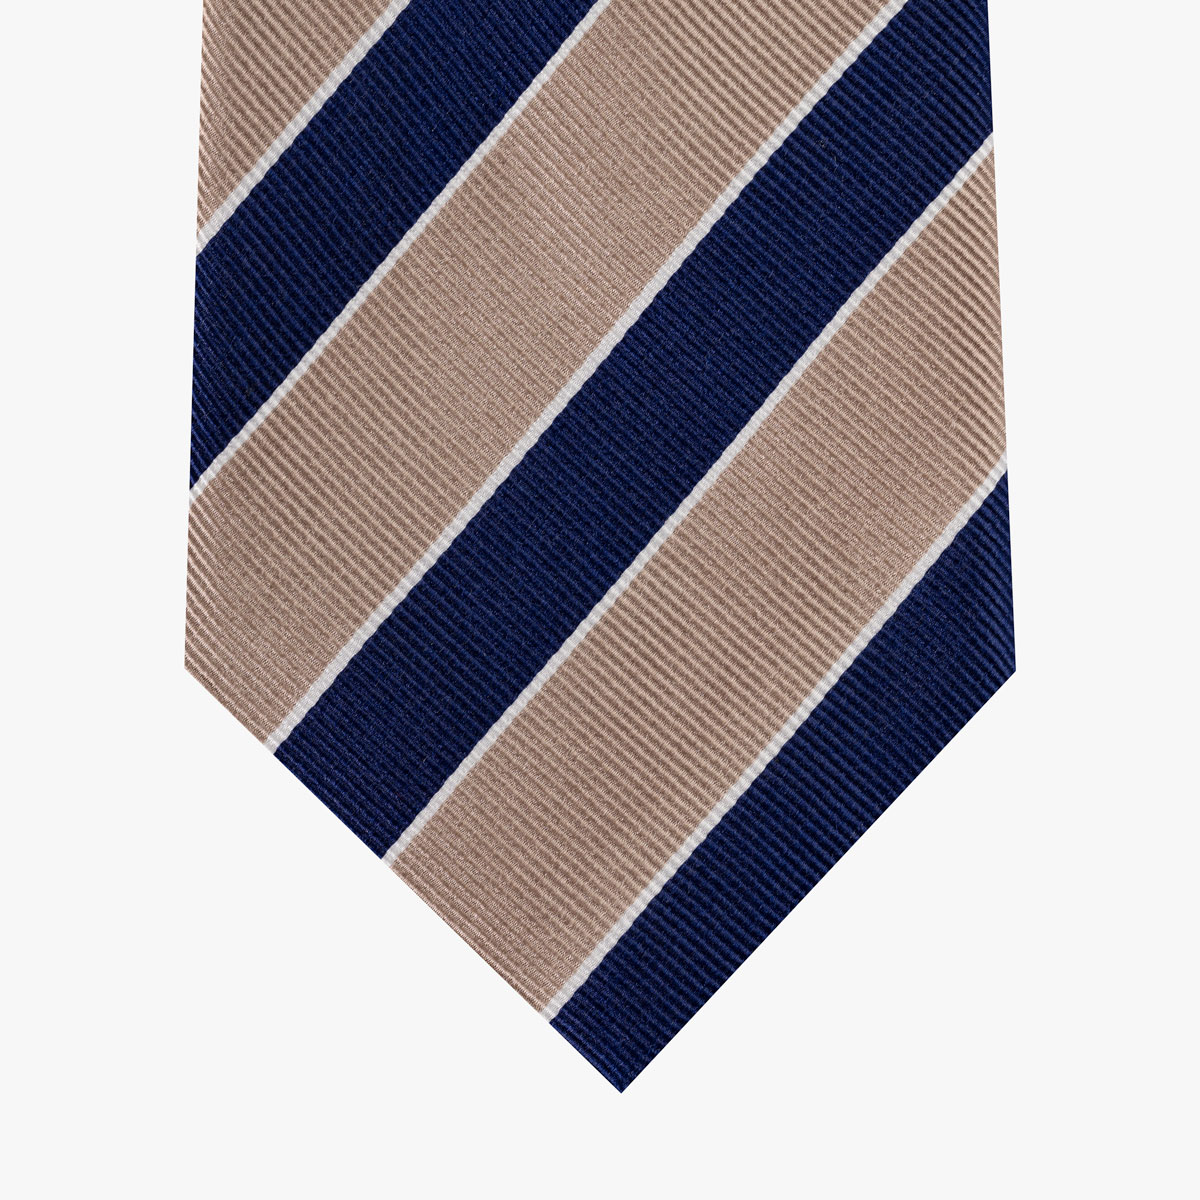 Krawatte mit diagonalen Streifen in dunkelblau beige